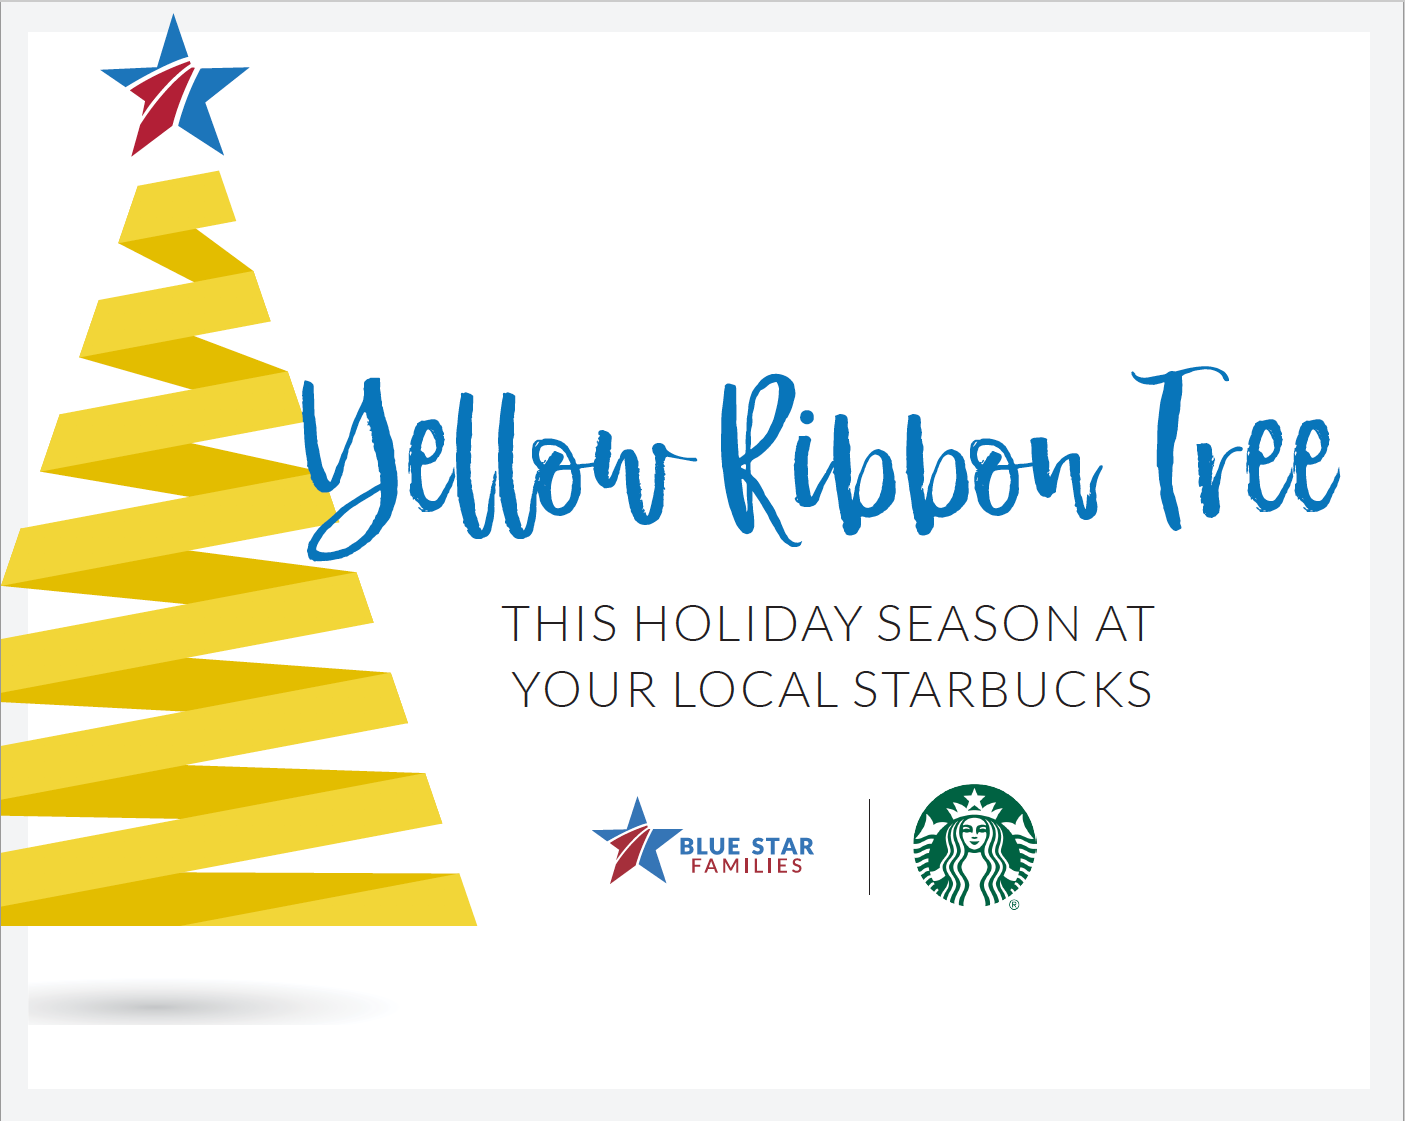 Starbucks yellow ribbon tree graphic image